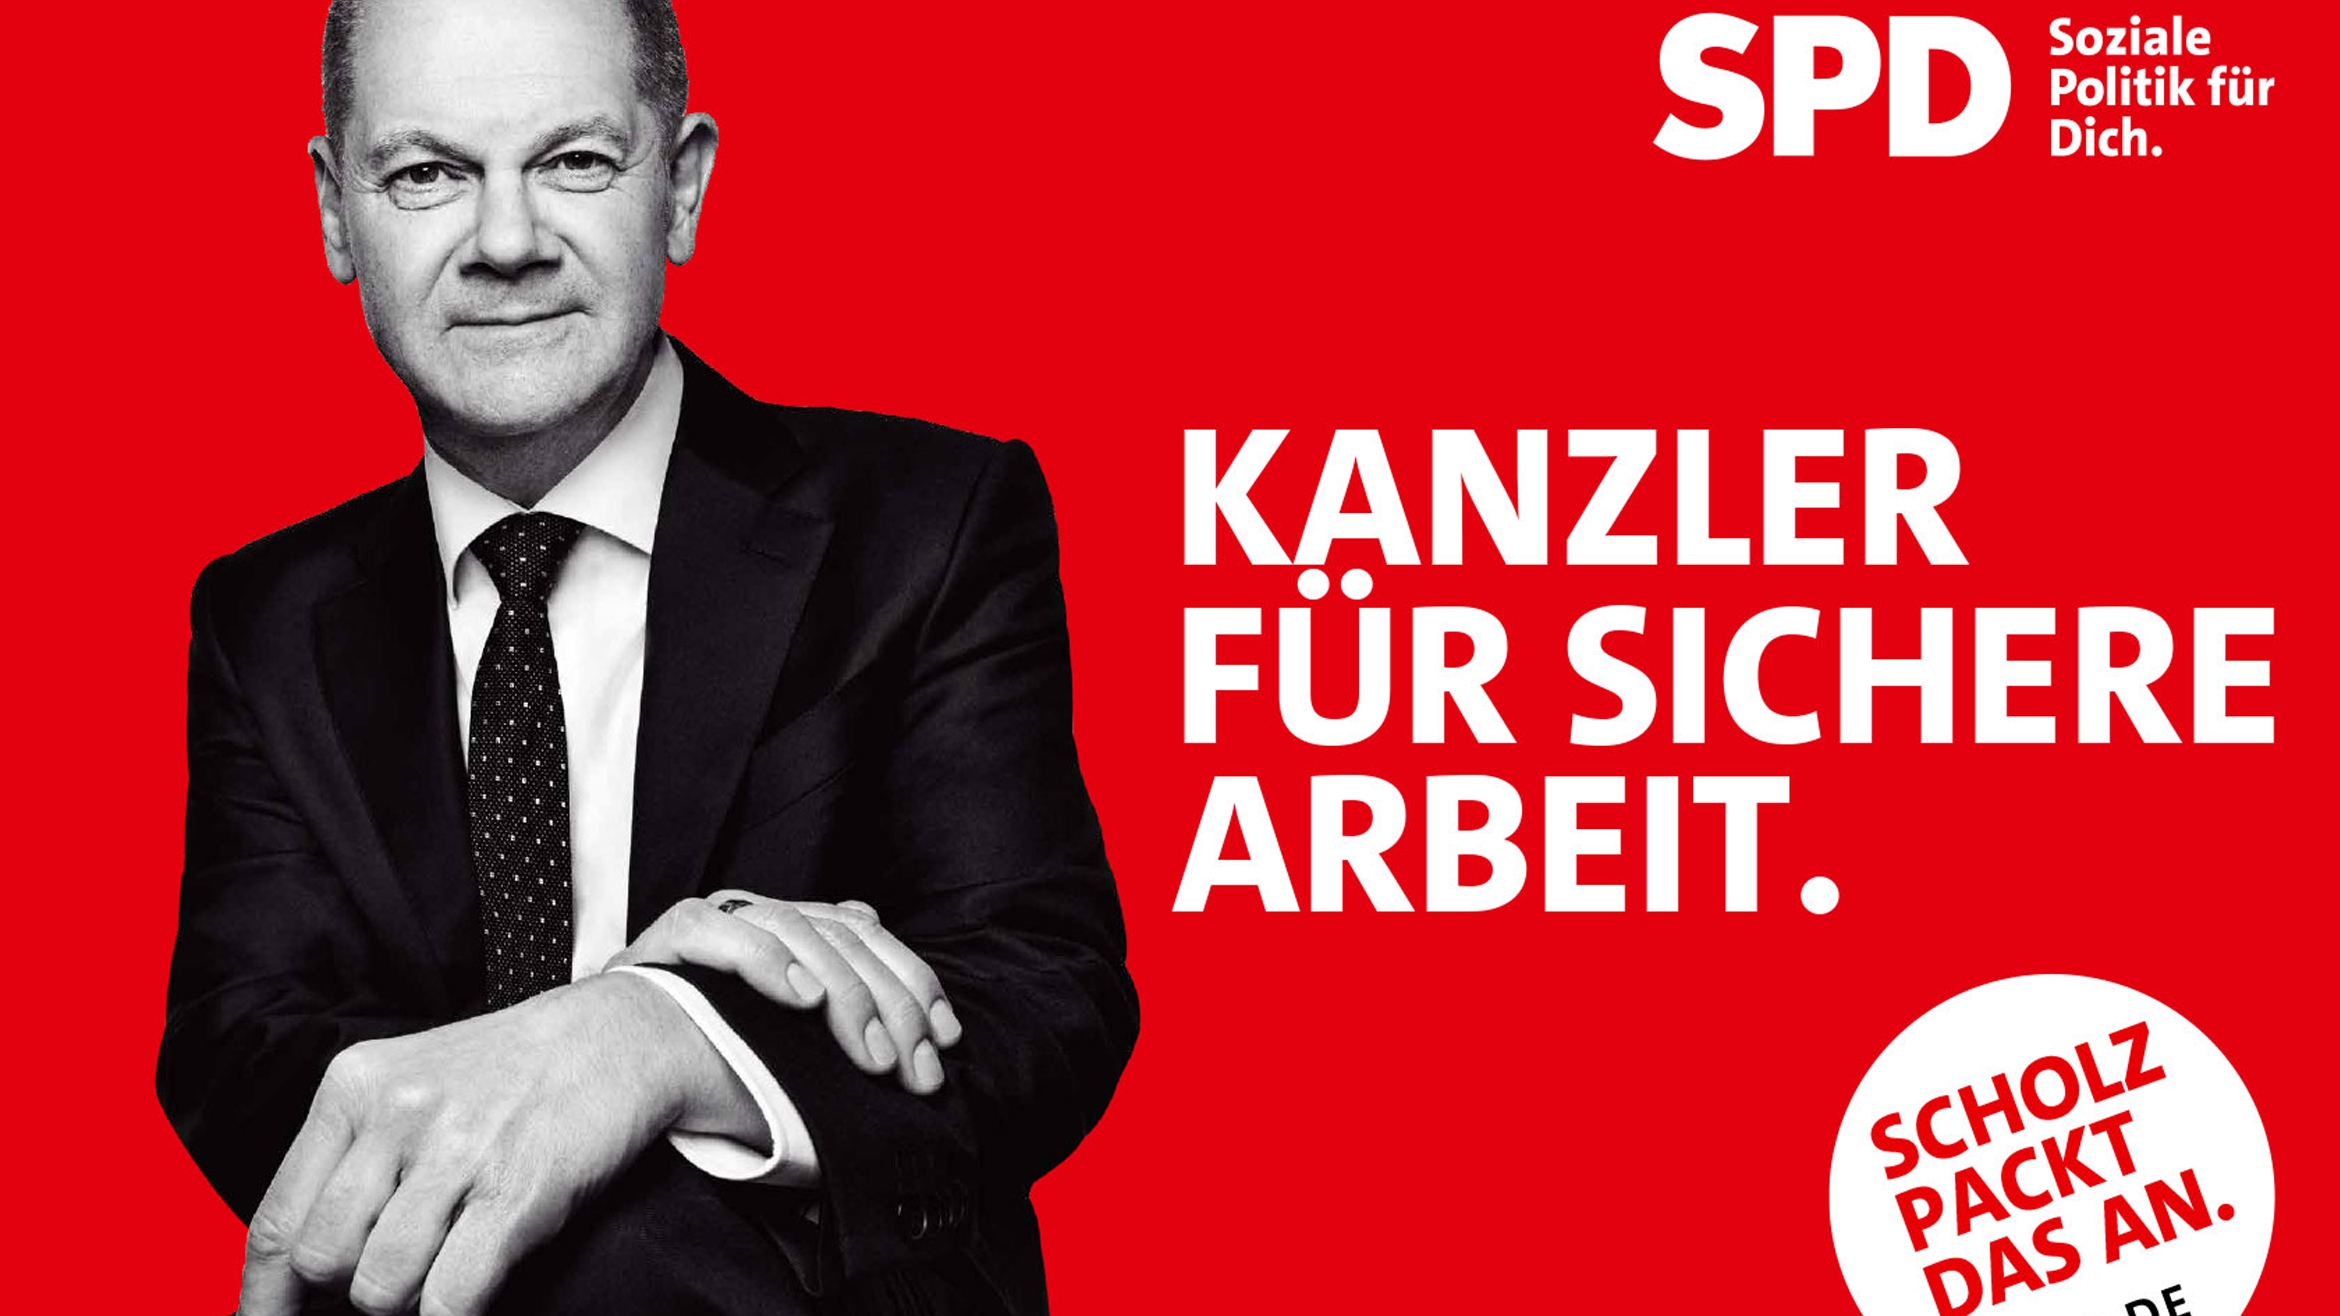 Erstes der insgesamt vier Kampagnenmotive, mit der die SPD die heiße Phase des Bundestagswahlkamps einläutet –